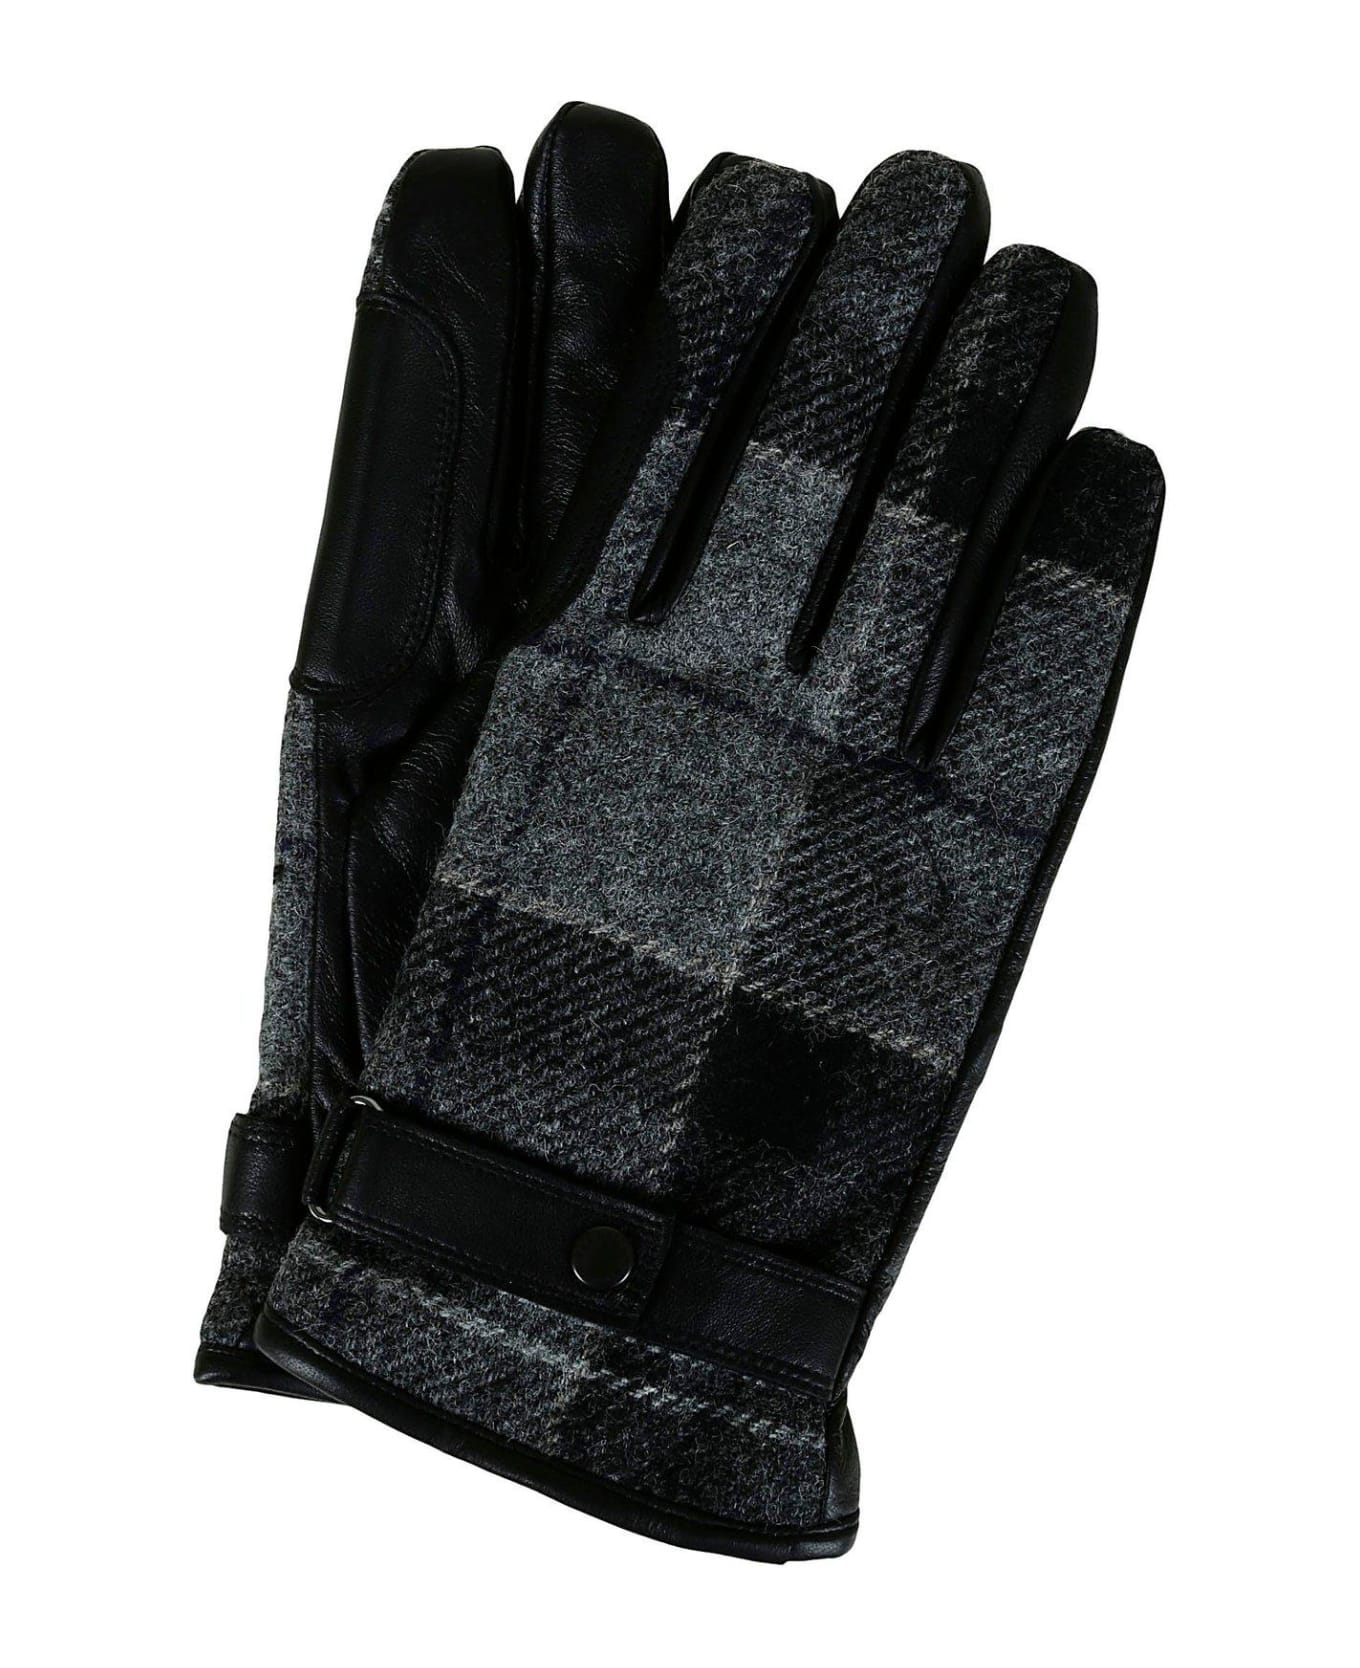 Barbour Black And Grey Tartan Wool Gloves - Black/grey 手袋